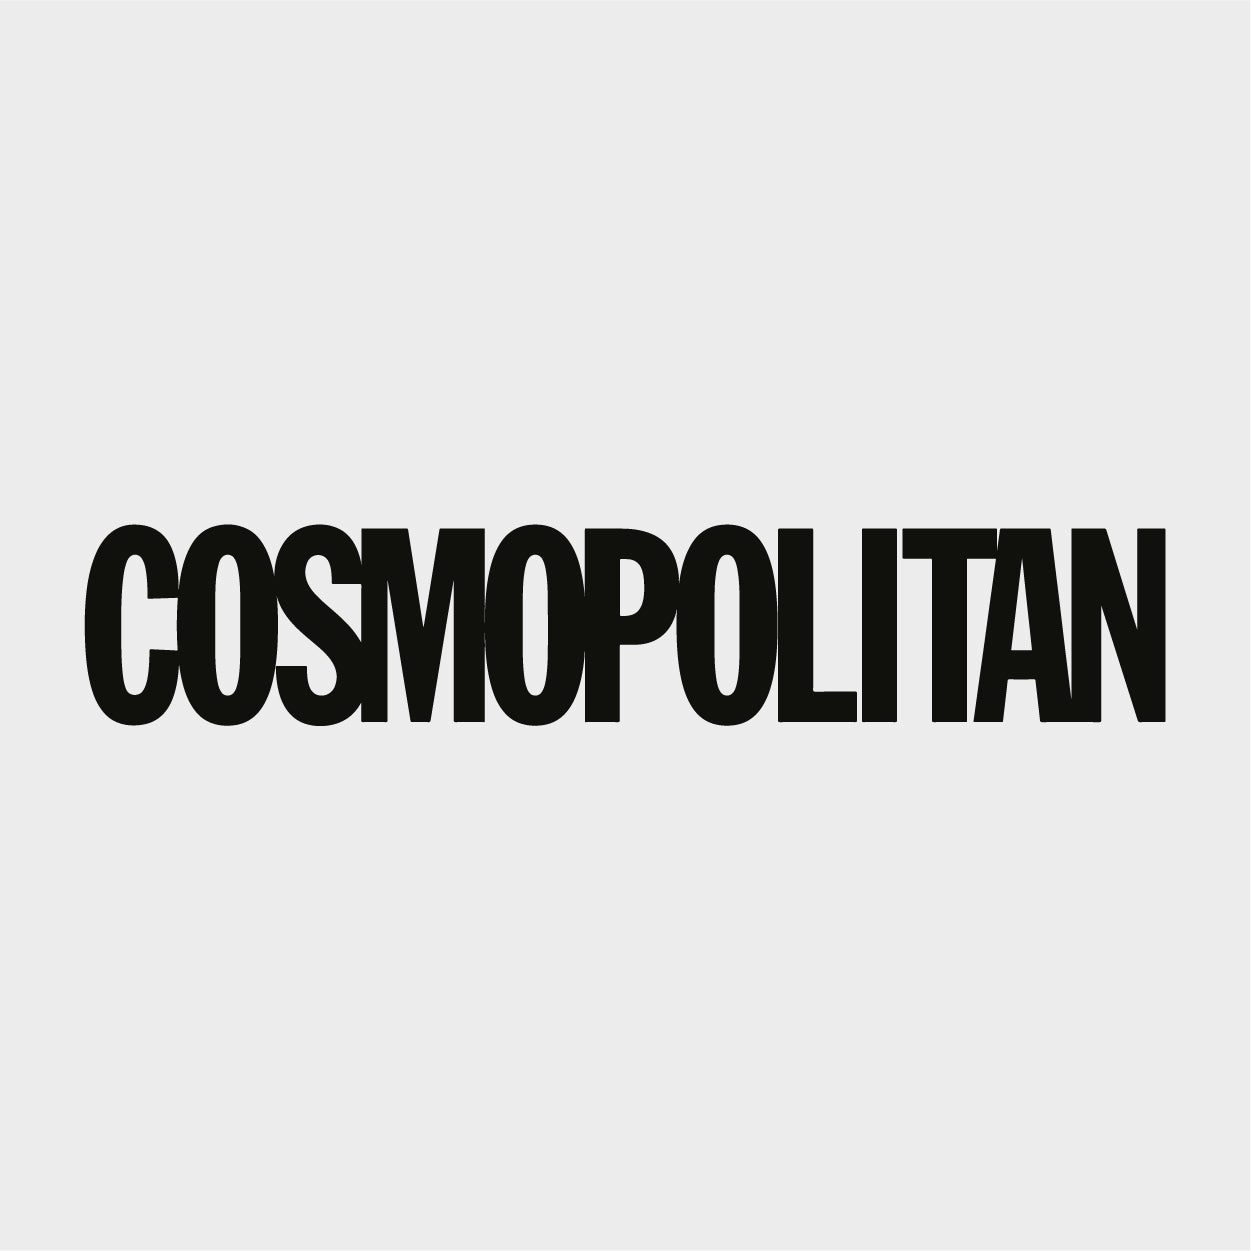 black cosmopolitan logo on white background